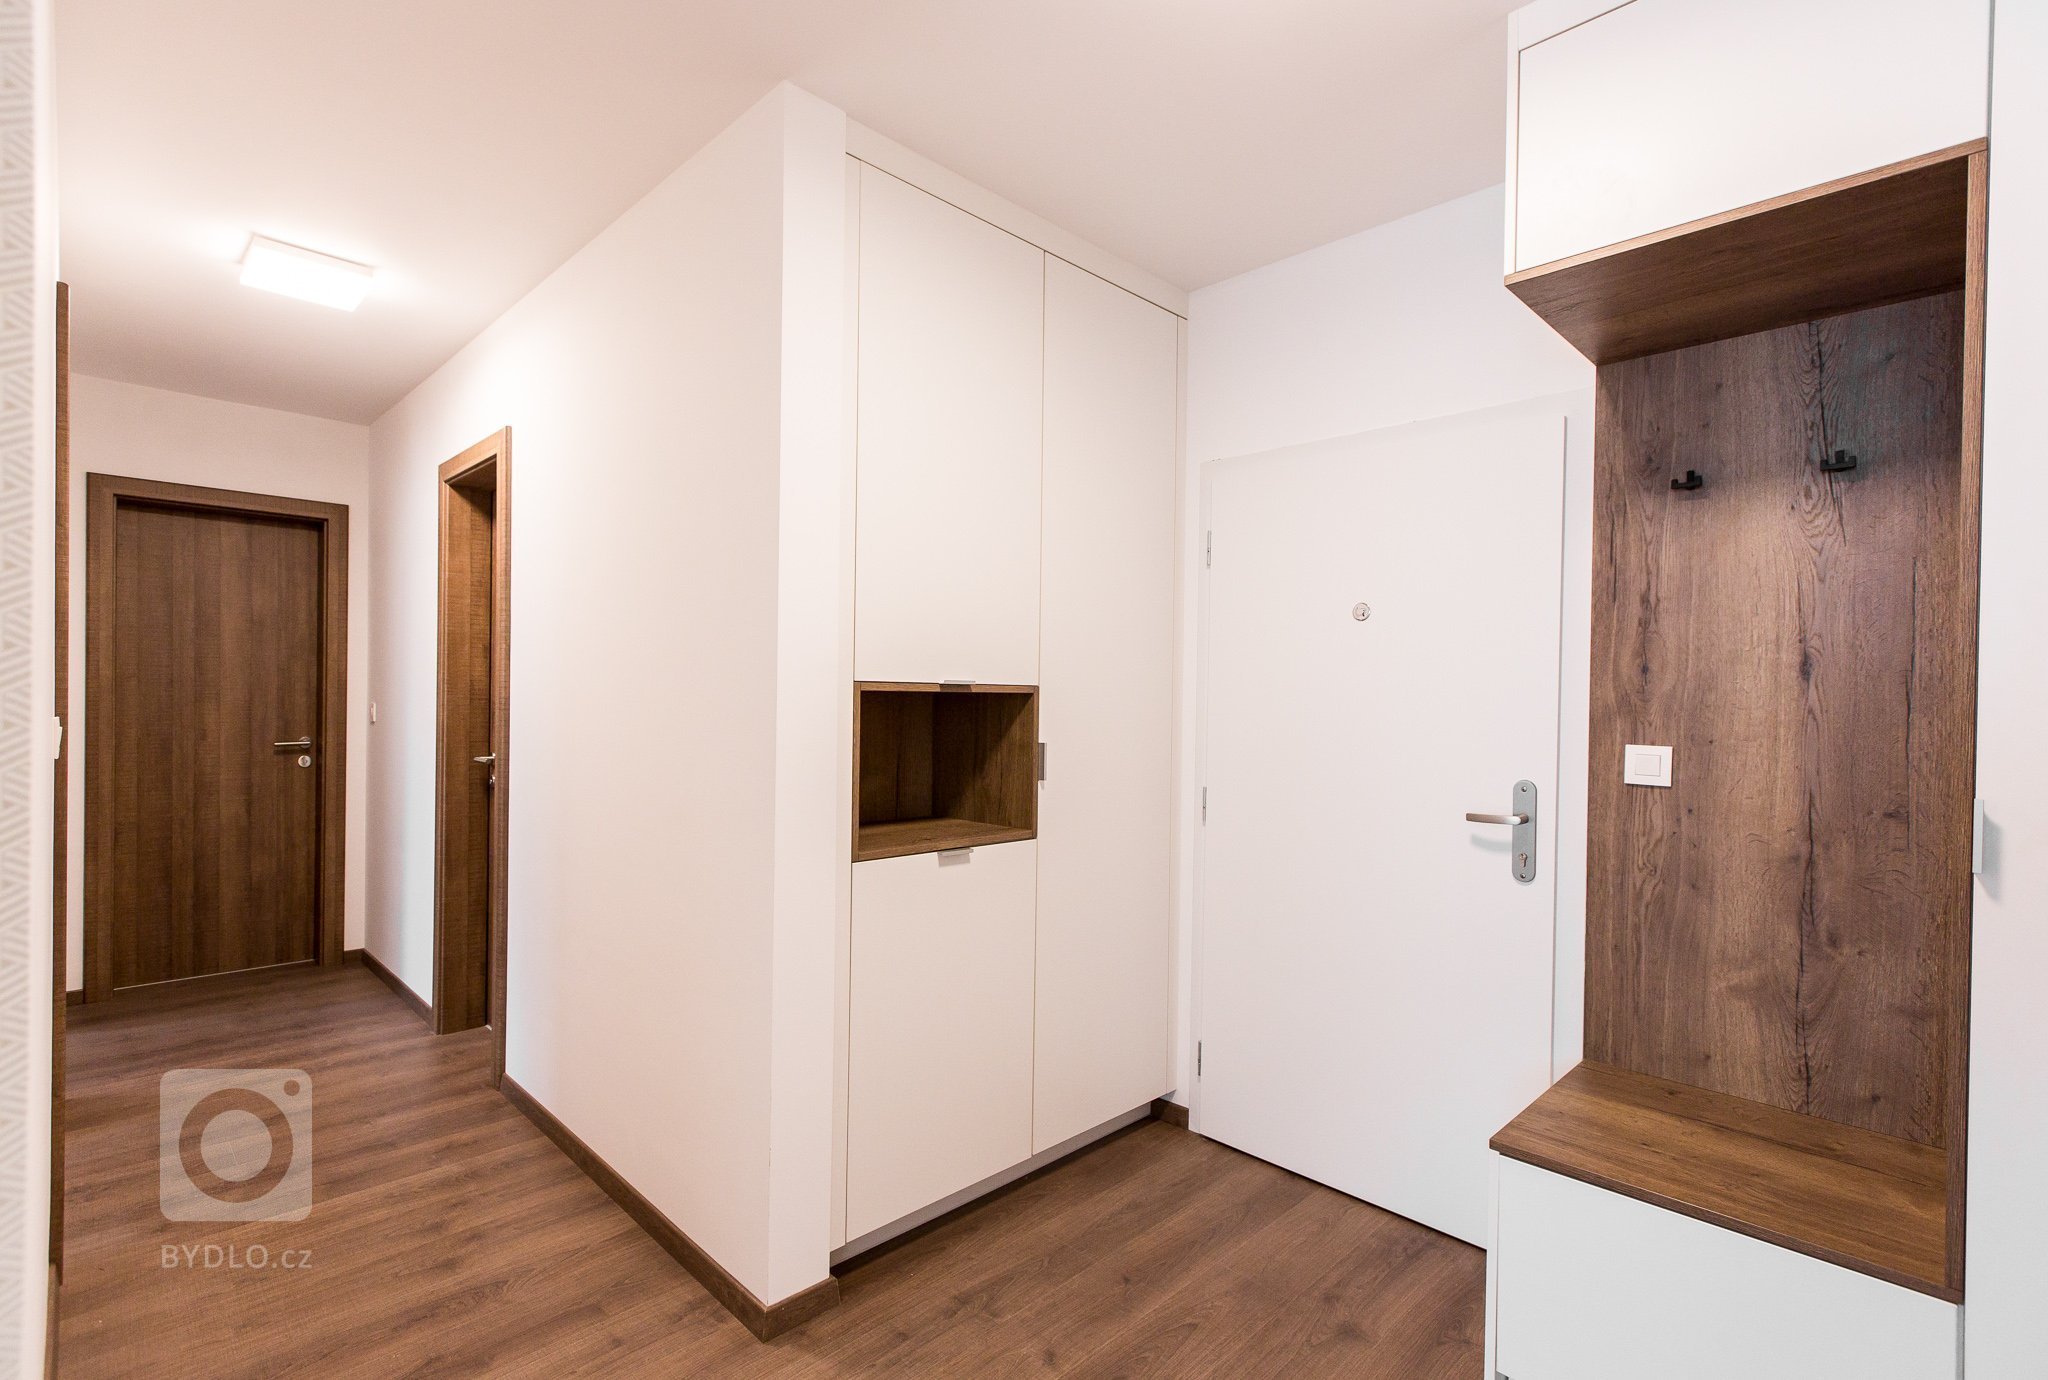 Realizácia 3i. bytu v projekte Malé Krasňany. 

Byt je navrhnutý v príjemných zemitých farbách, navodzuje hotelový štýl.&nbsp;

Kuchynská linka priamo…